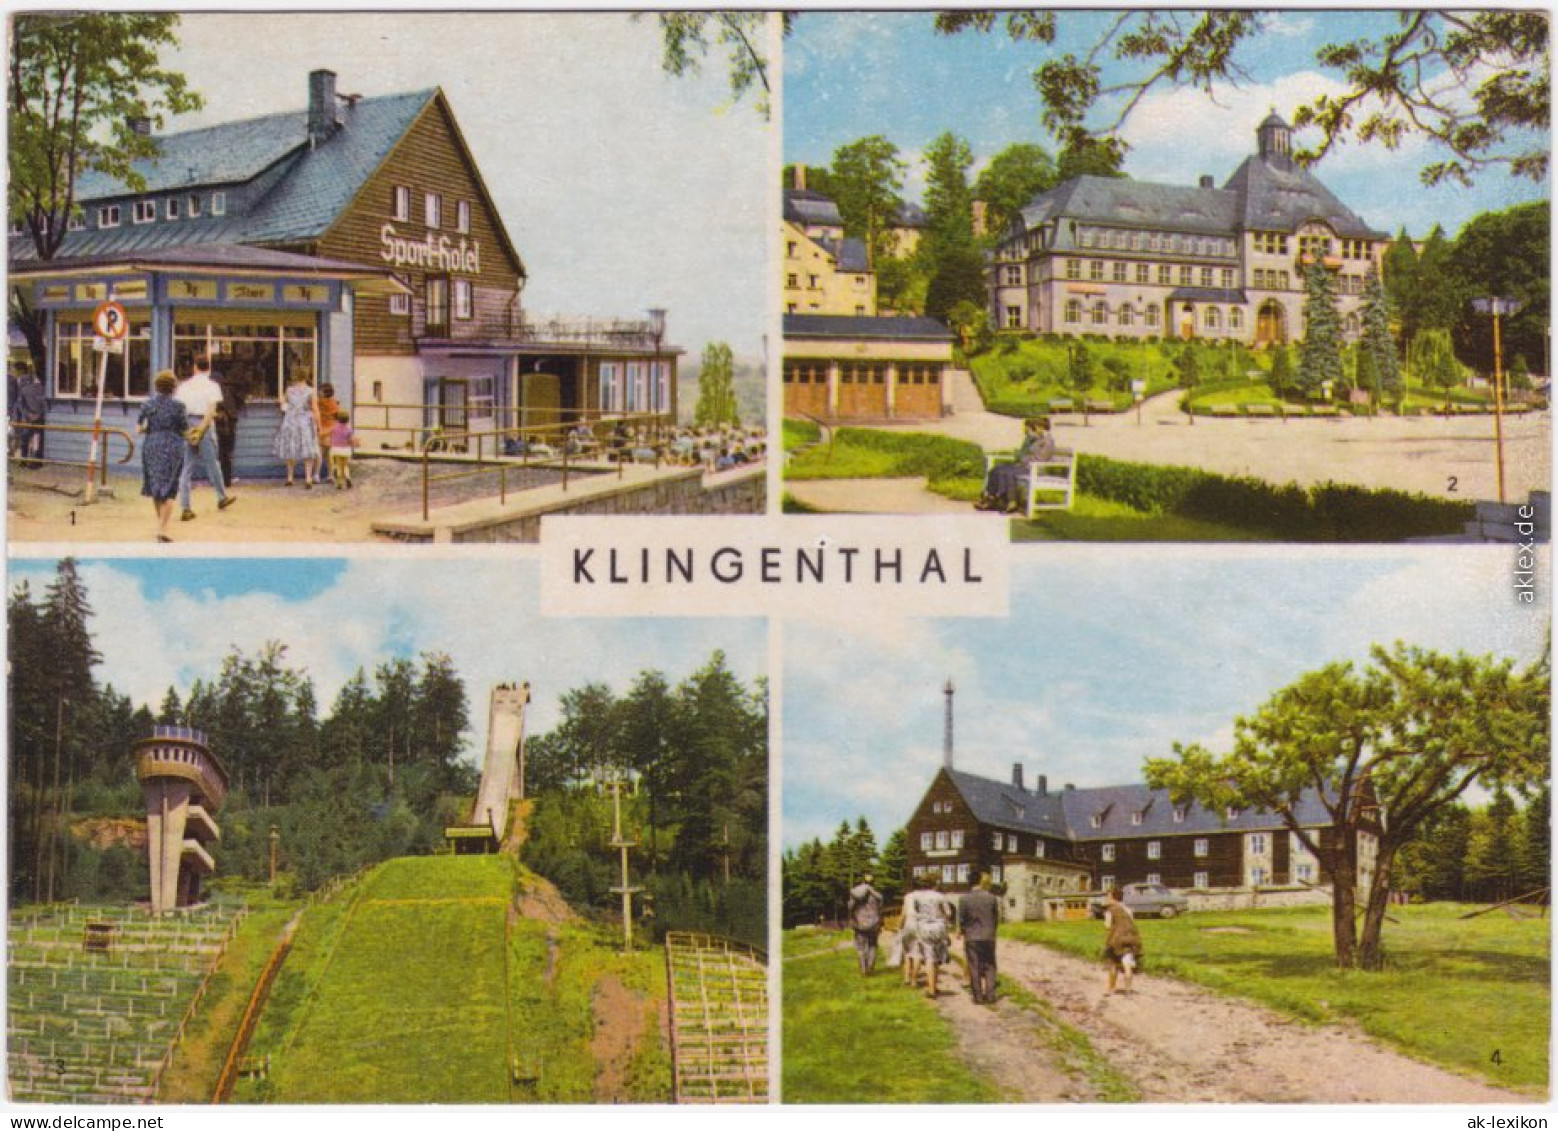 Klingenthal HOG Sport-Hotel Rathaus Große Aschbergschanze Jugendherberge   1984 - Klingenthal